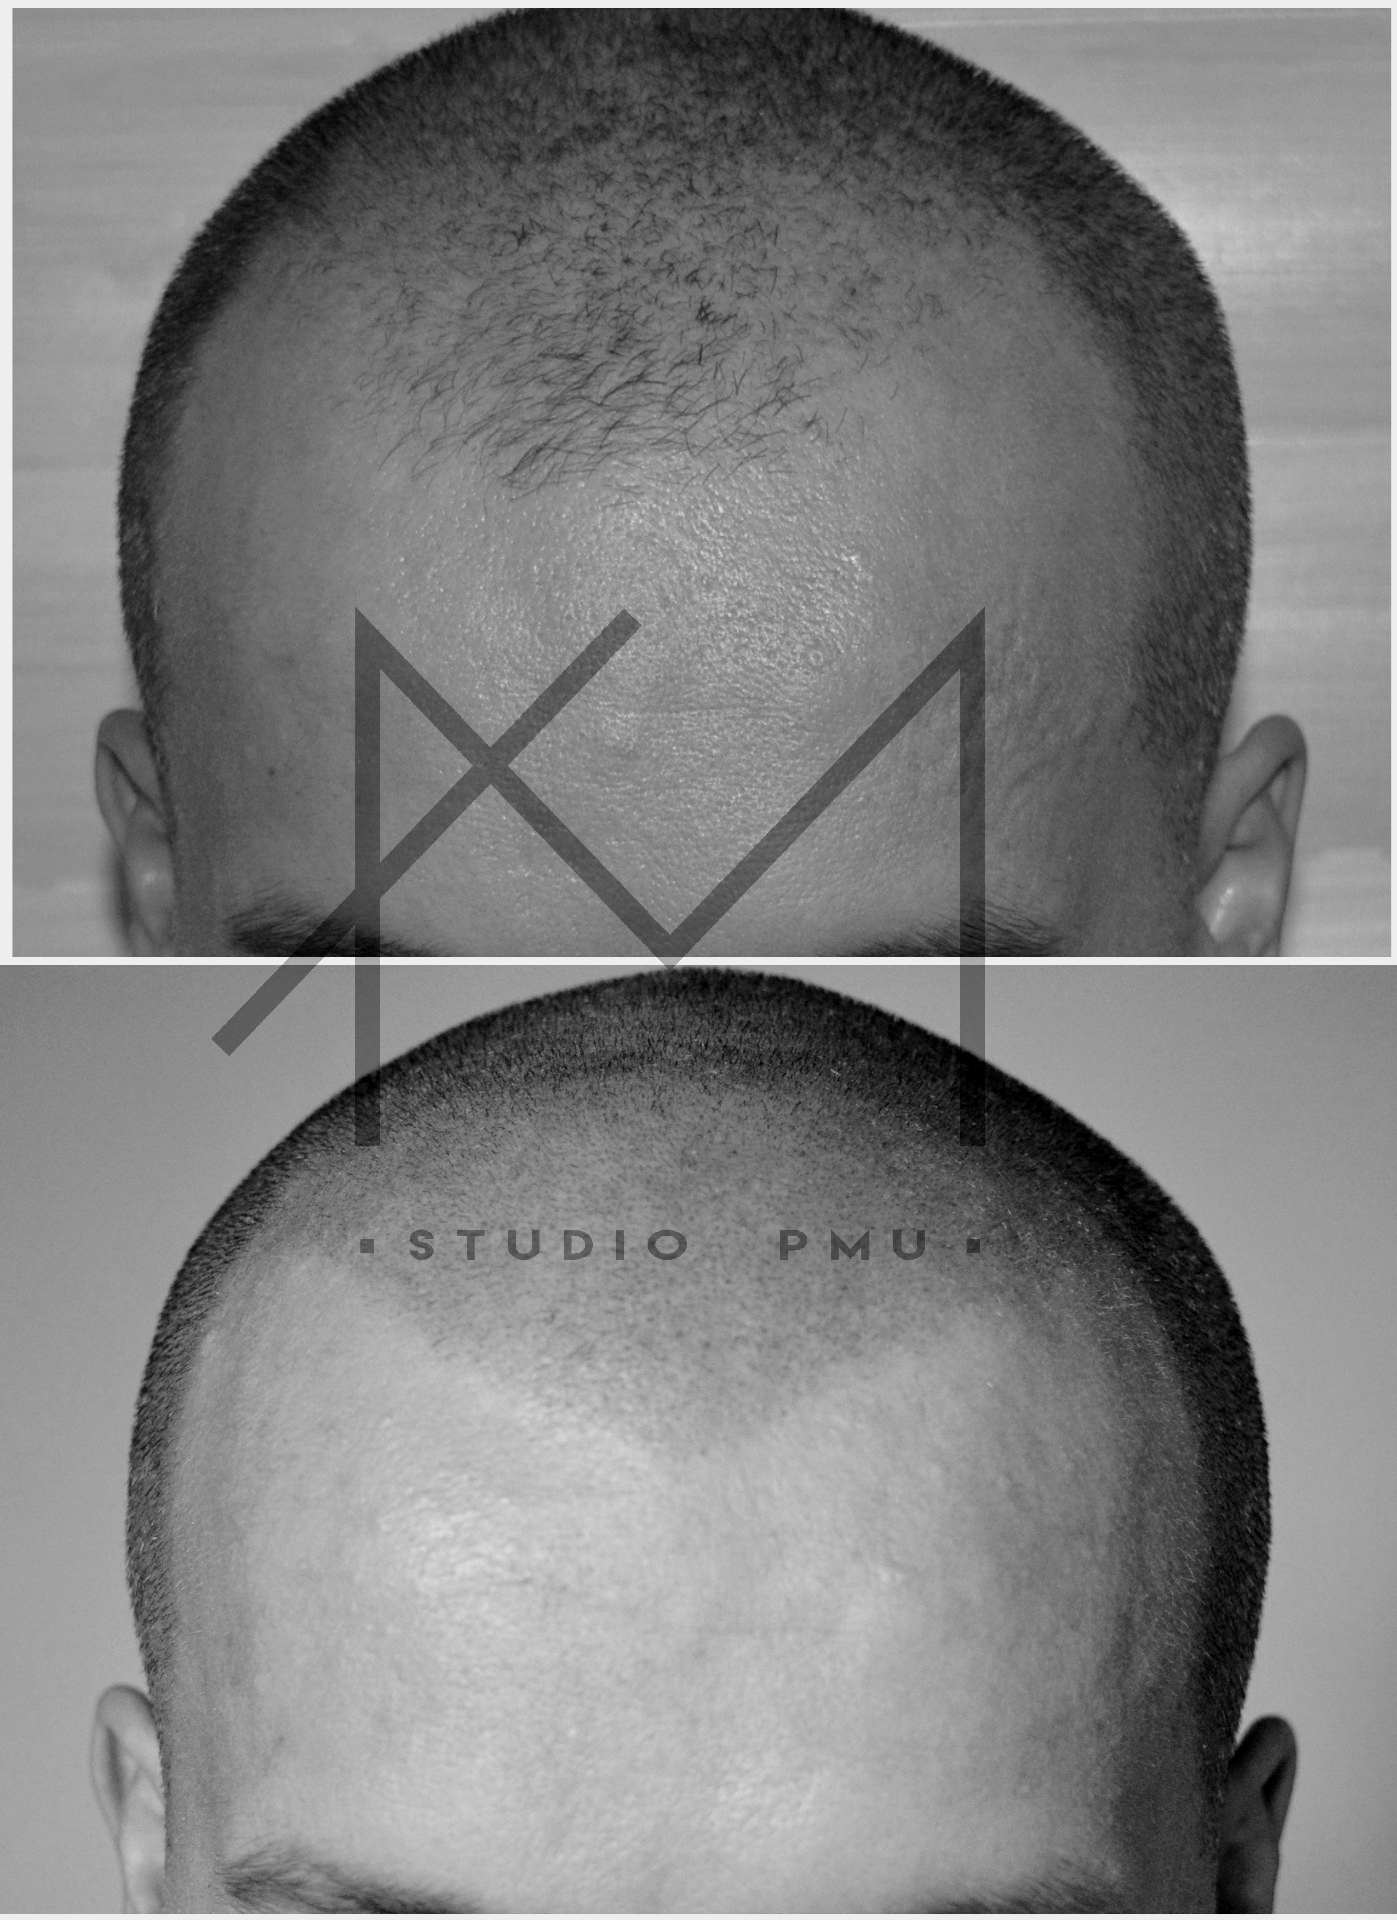 głowa męska po zabiegu mikropigmentacji